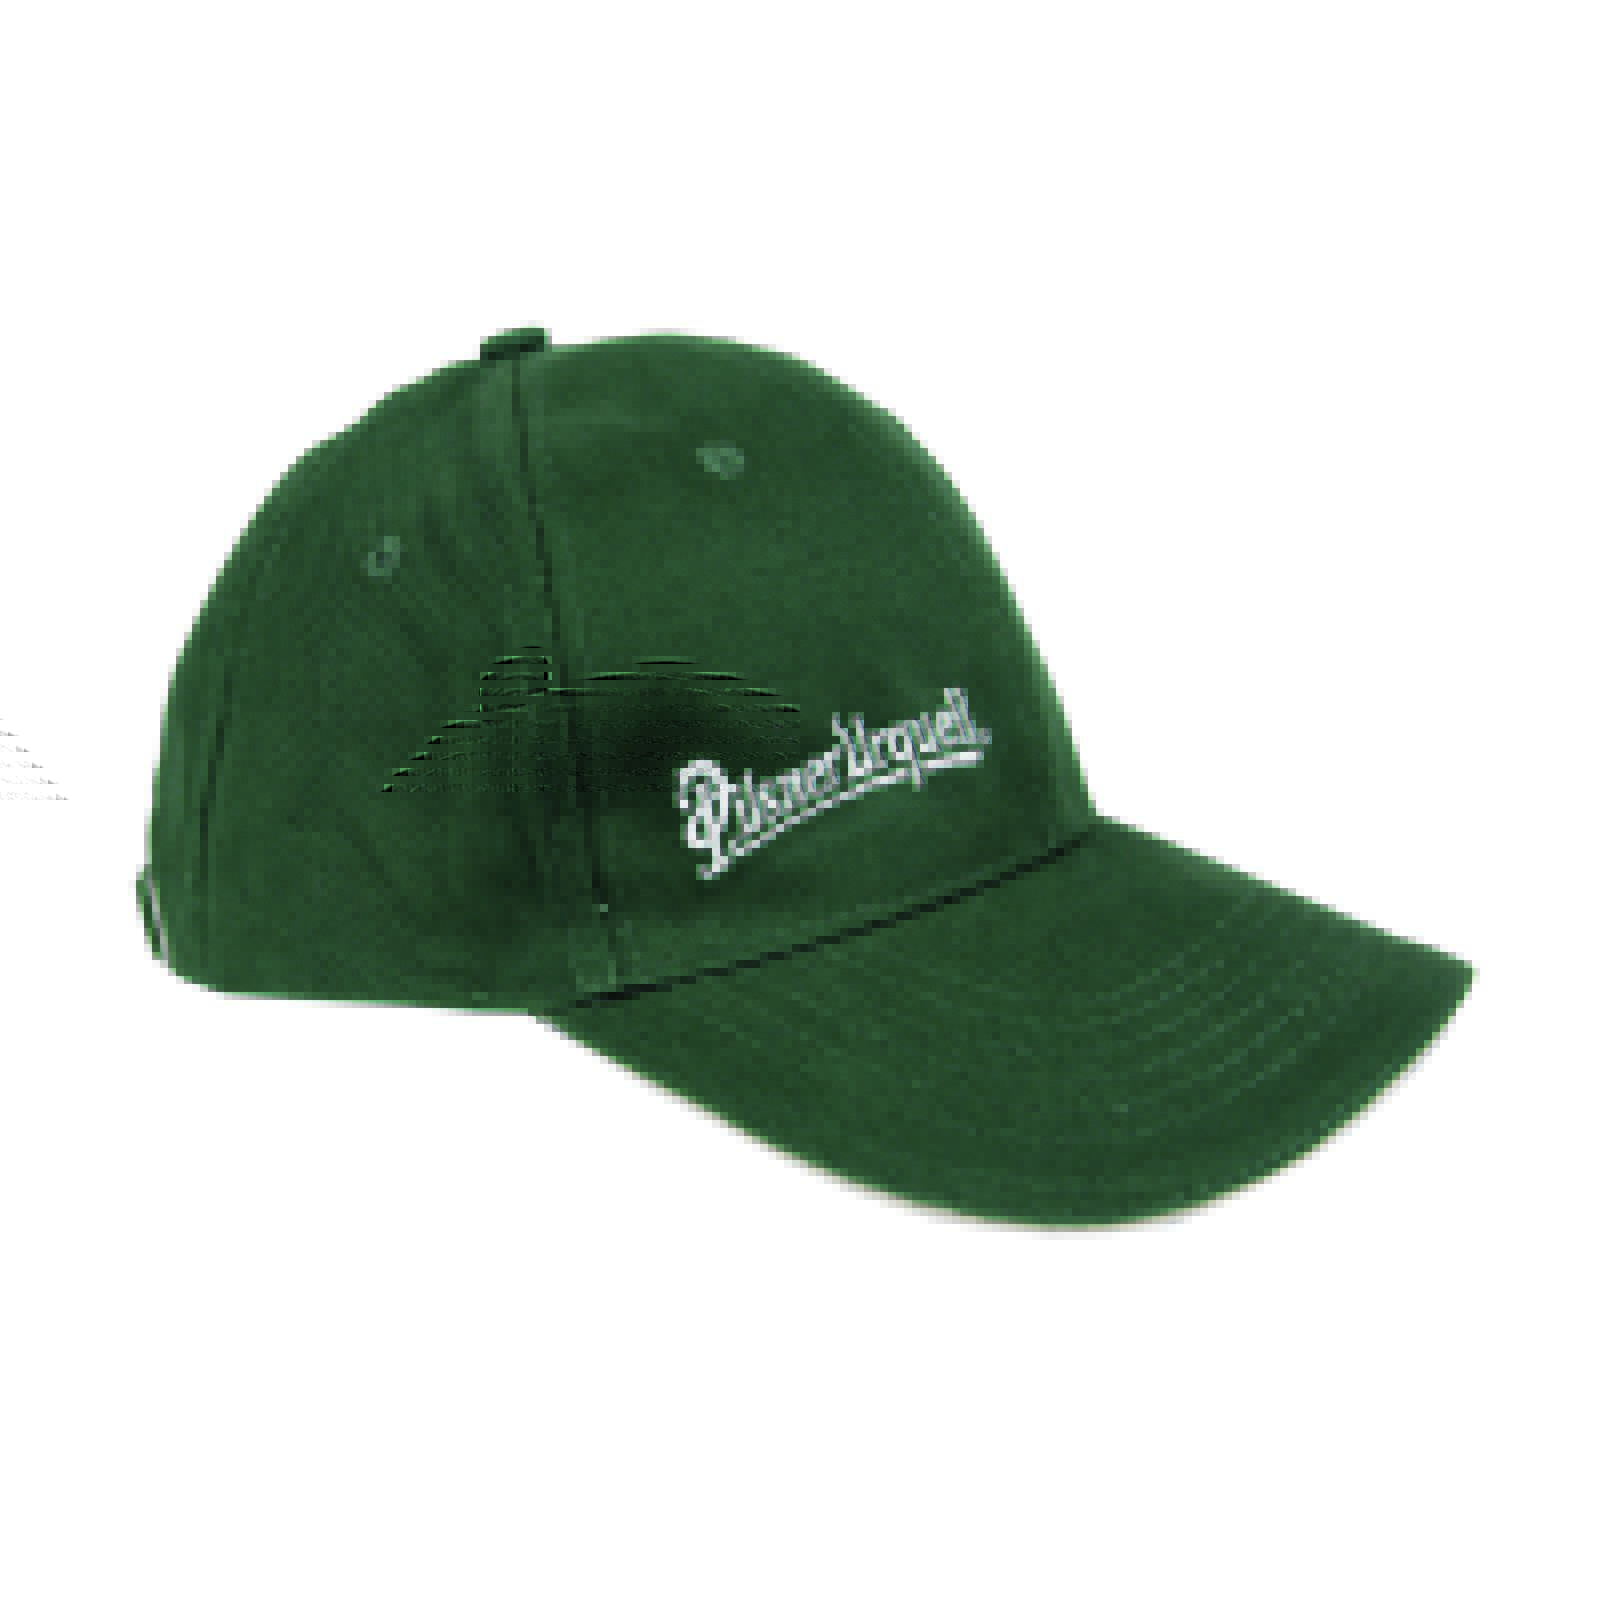 Pilsner Urquell baseball cap, green